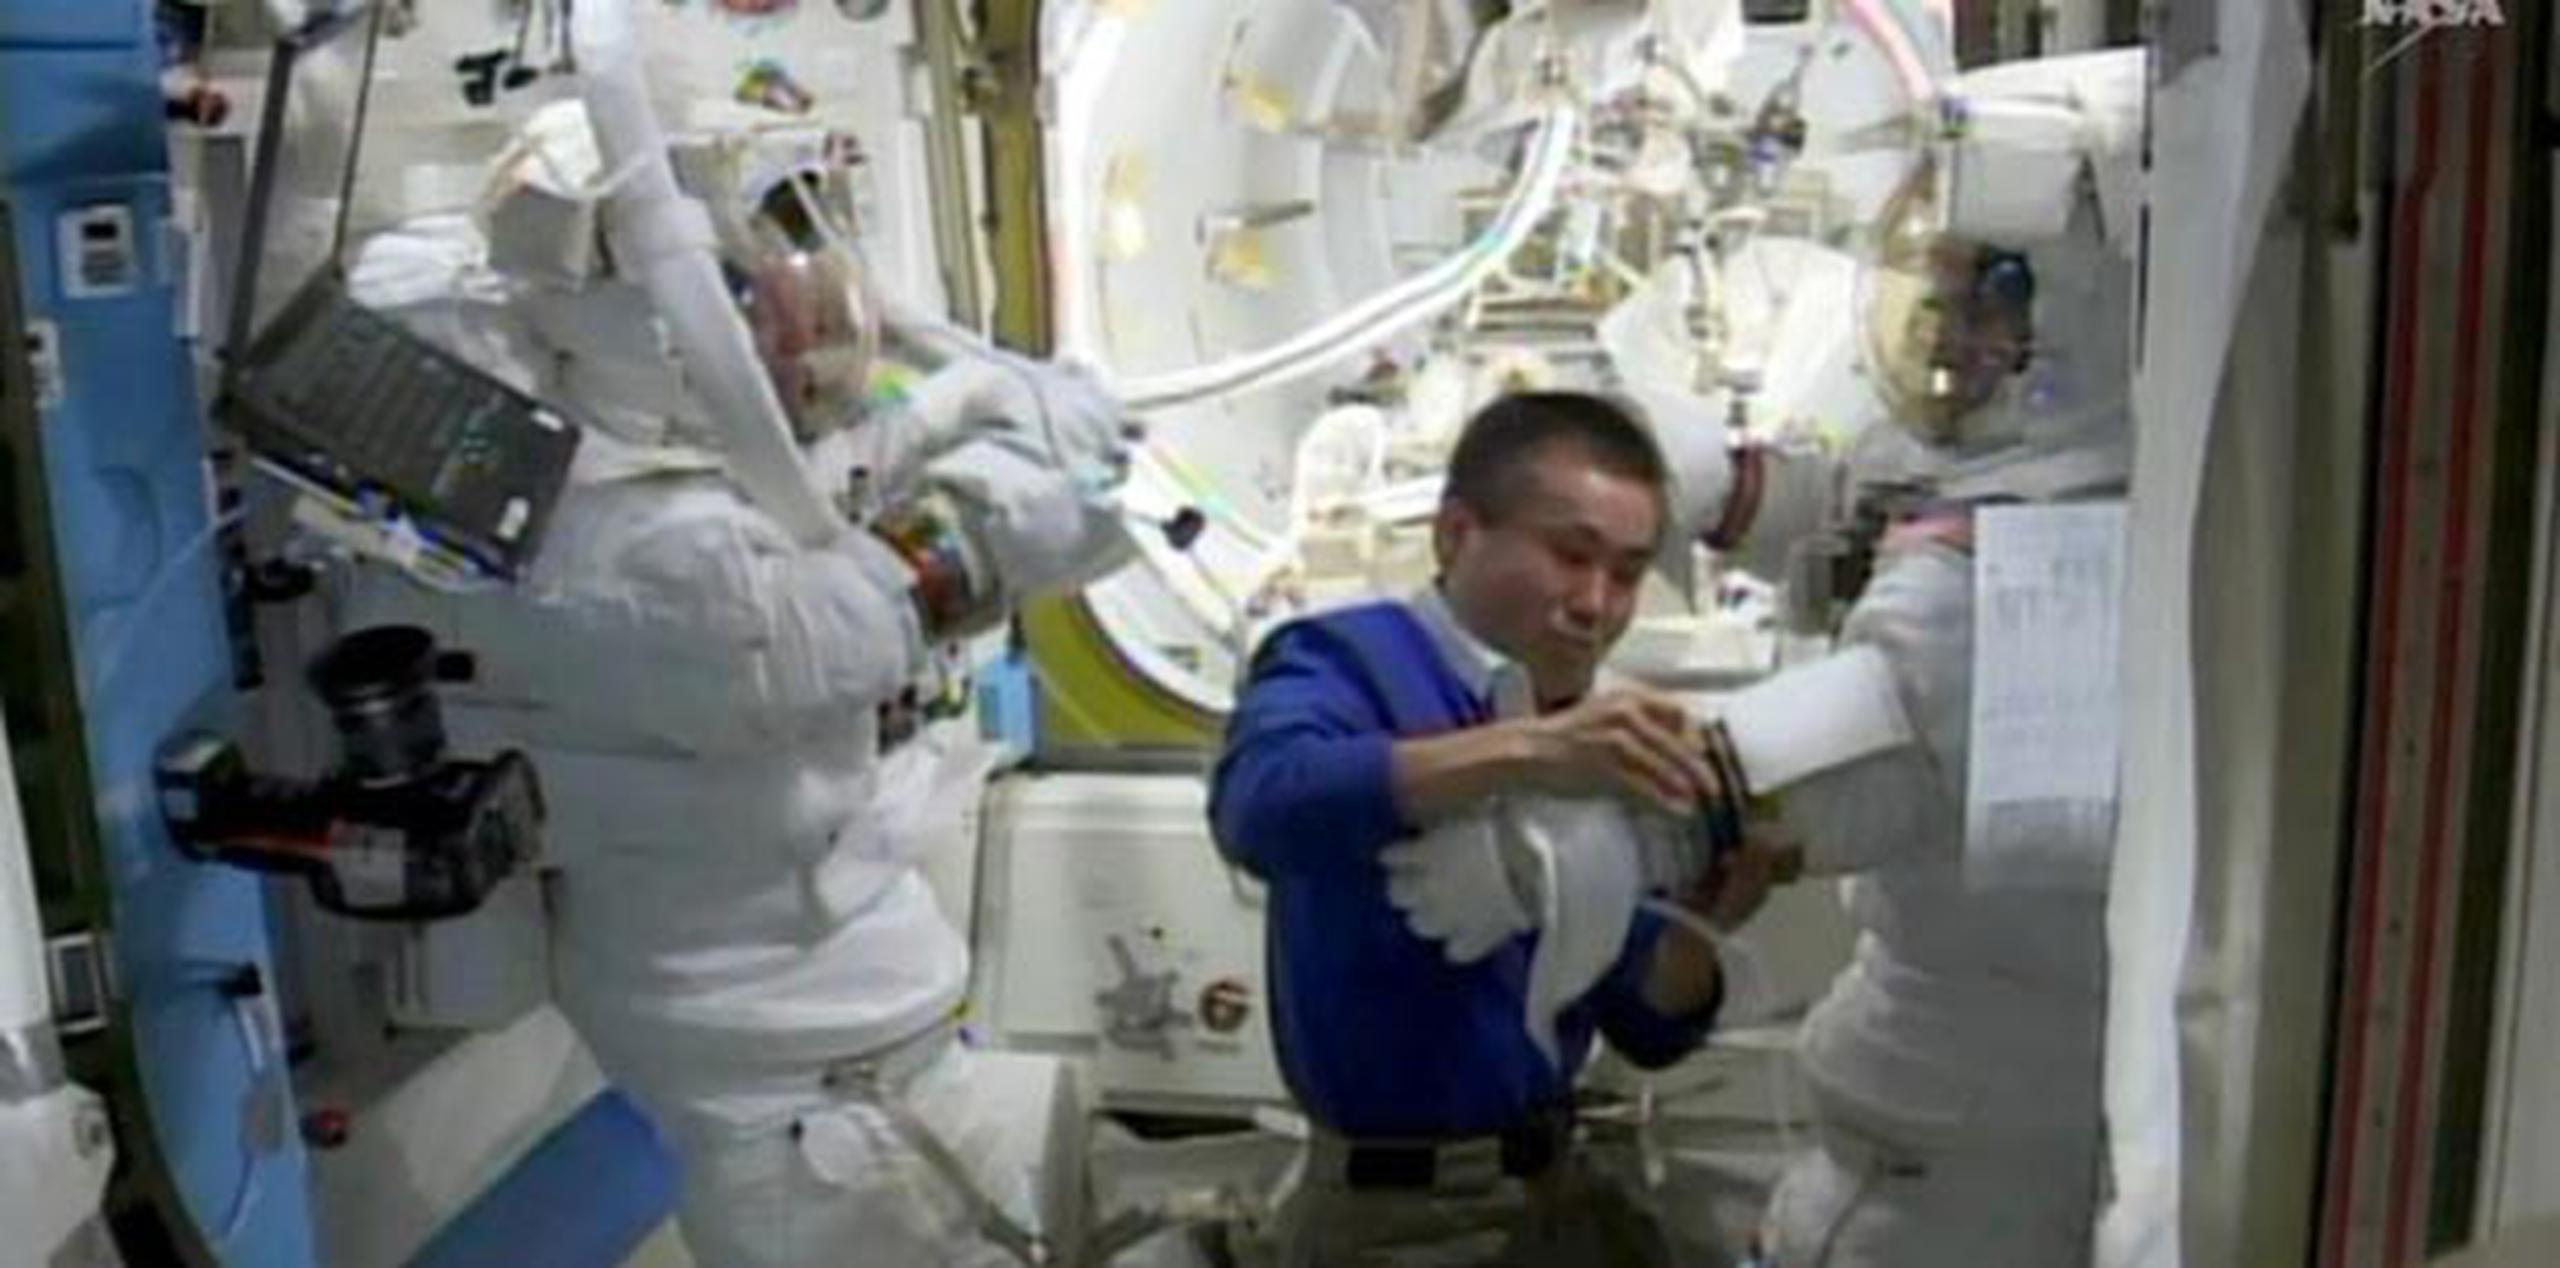 Los dos estadounidenses a bordo, Rick Mastracchio (a la izquierda) y Steven Swanson, realizaron el trabajo. (AFP / NASA TV)